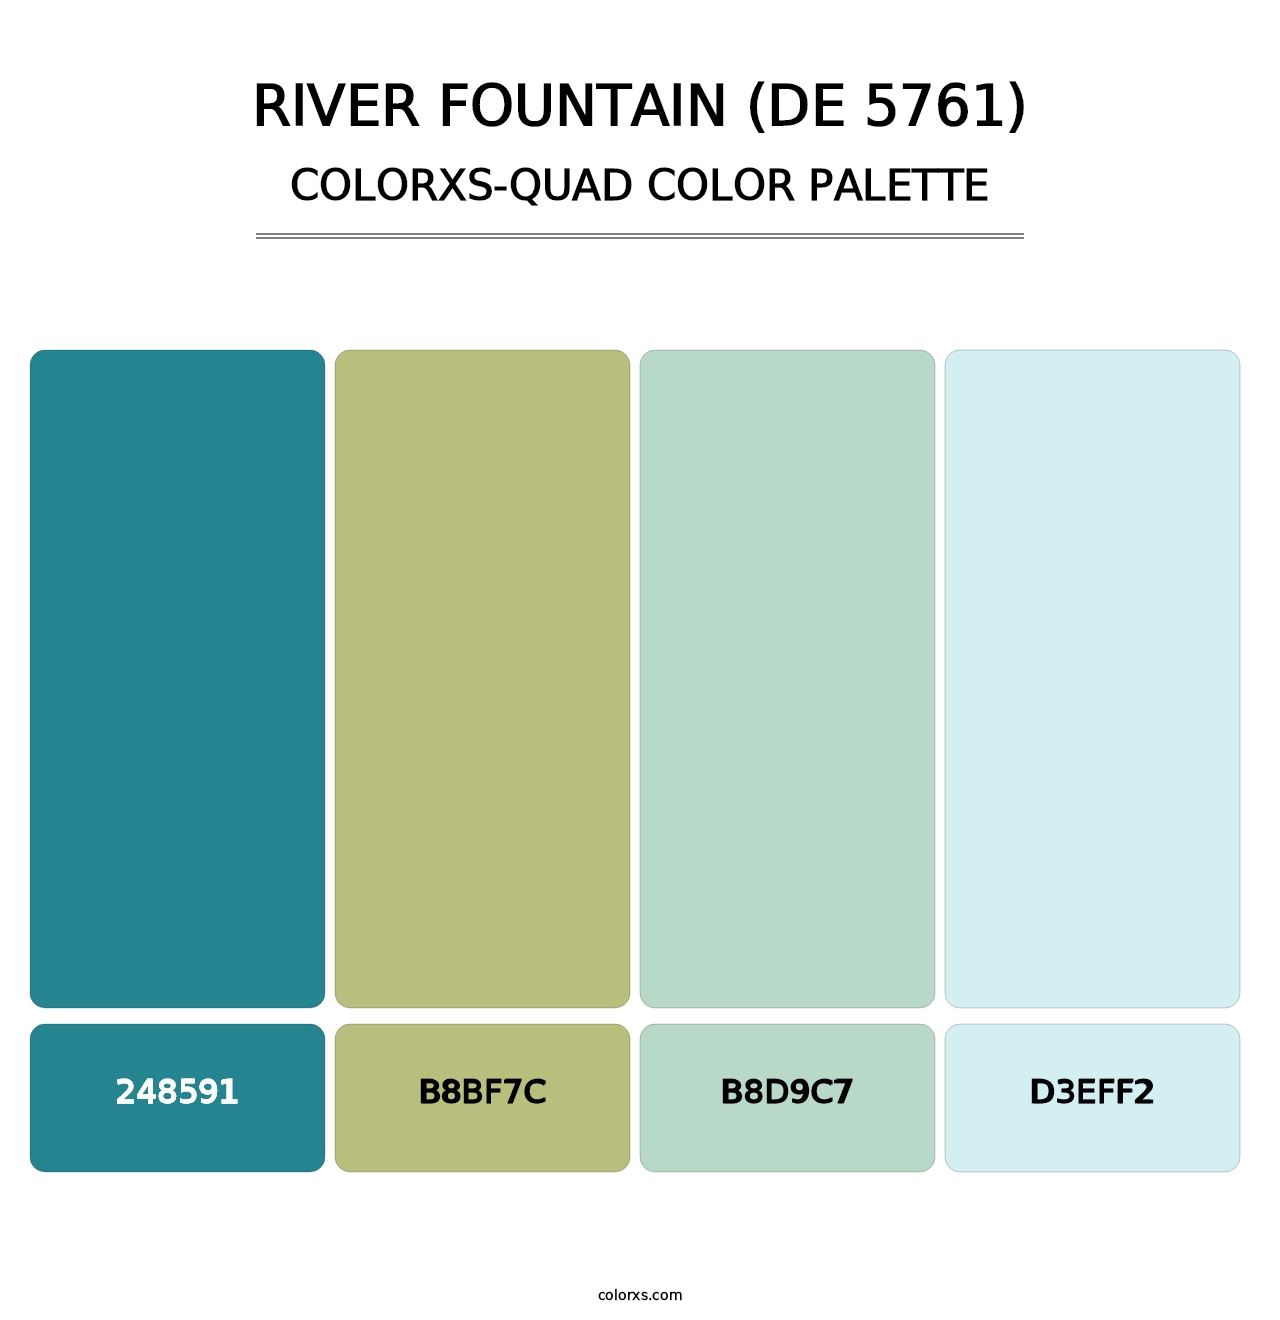 River Fountain (DE 5761) - Colorxs Quad Palette